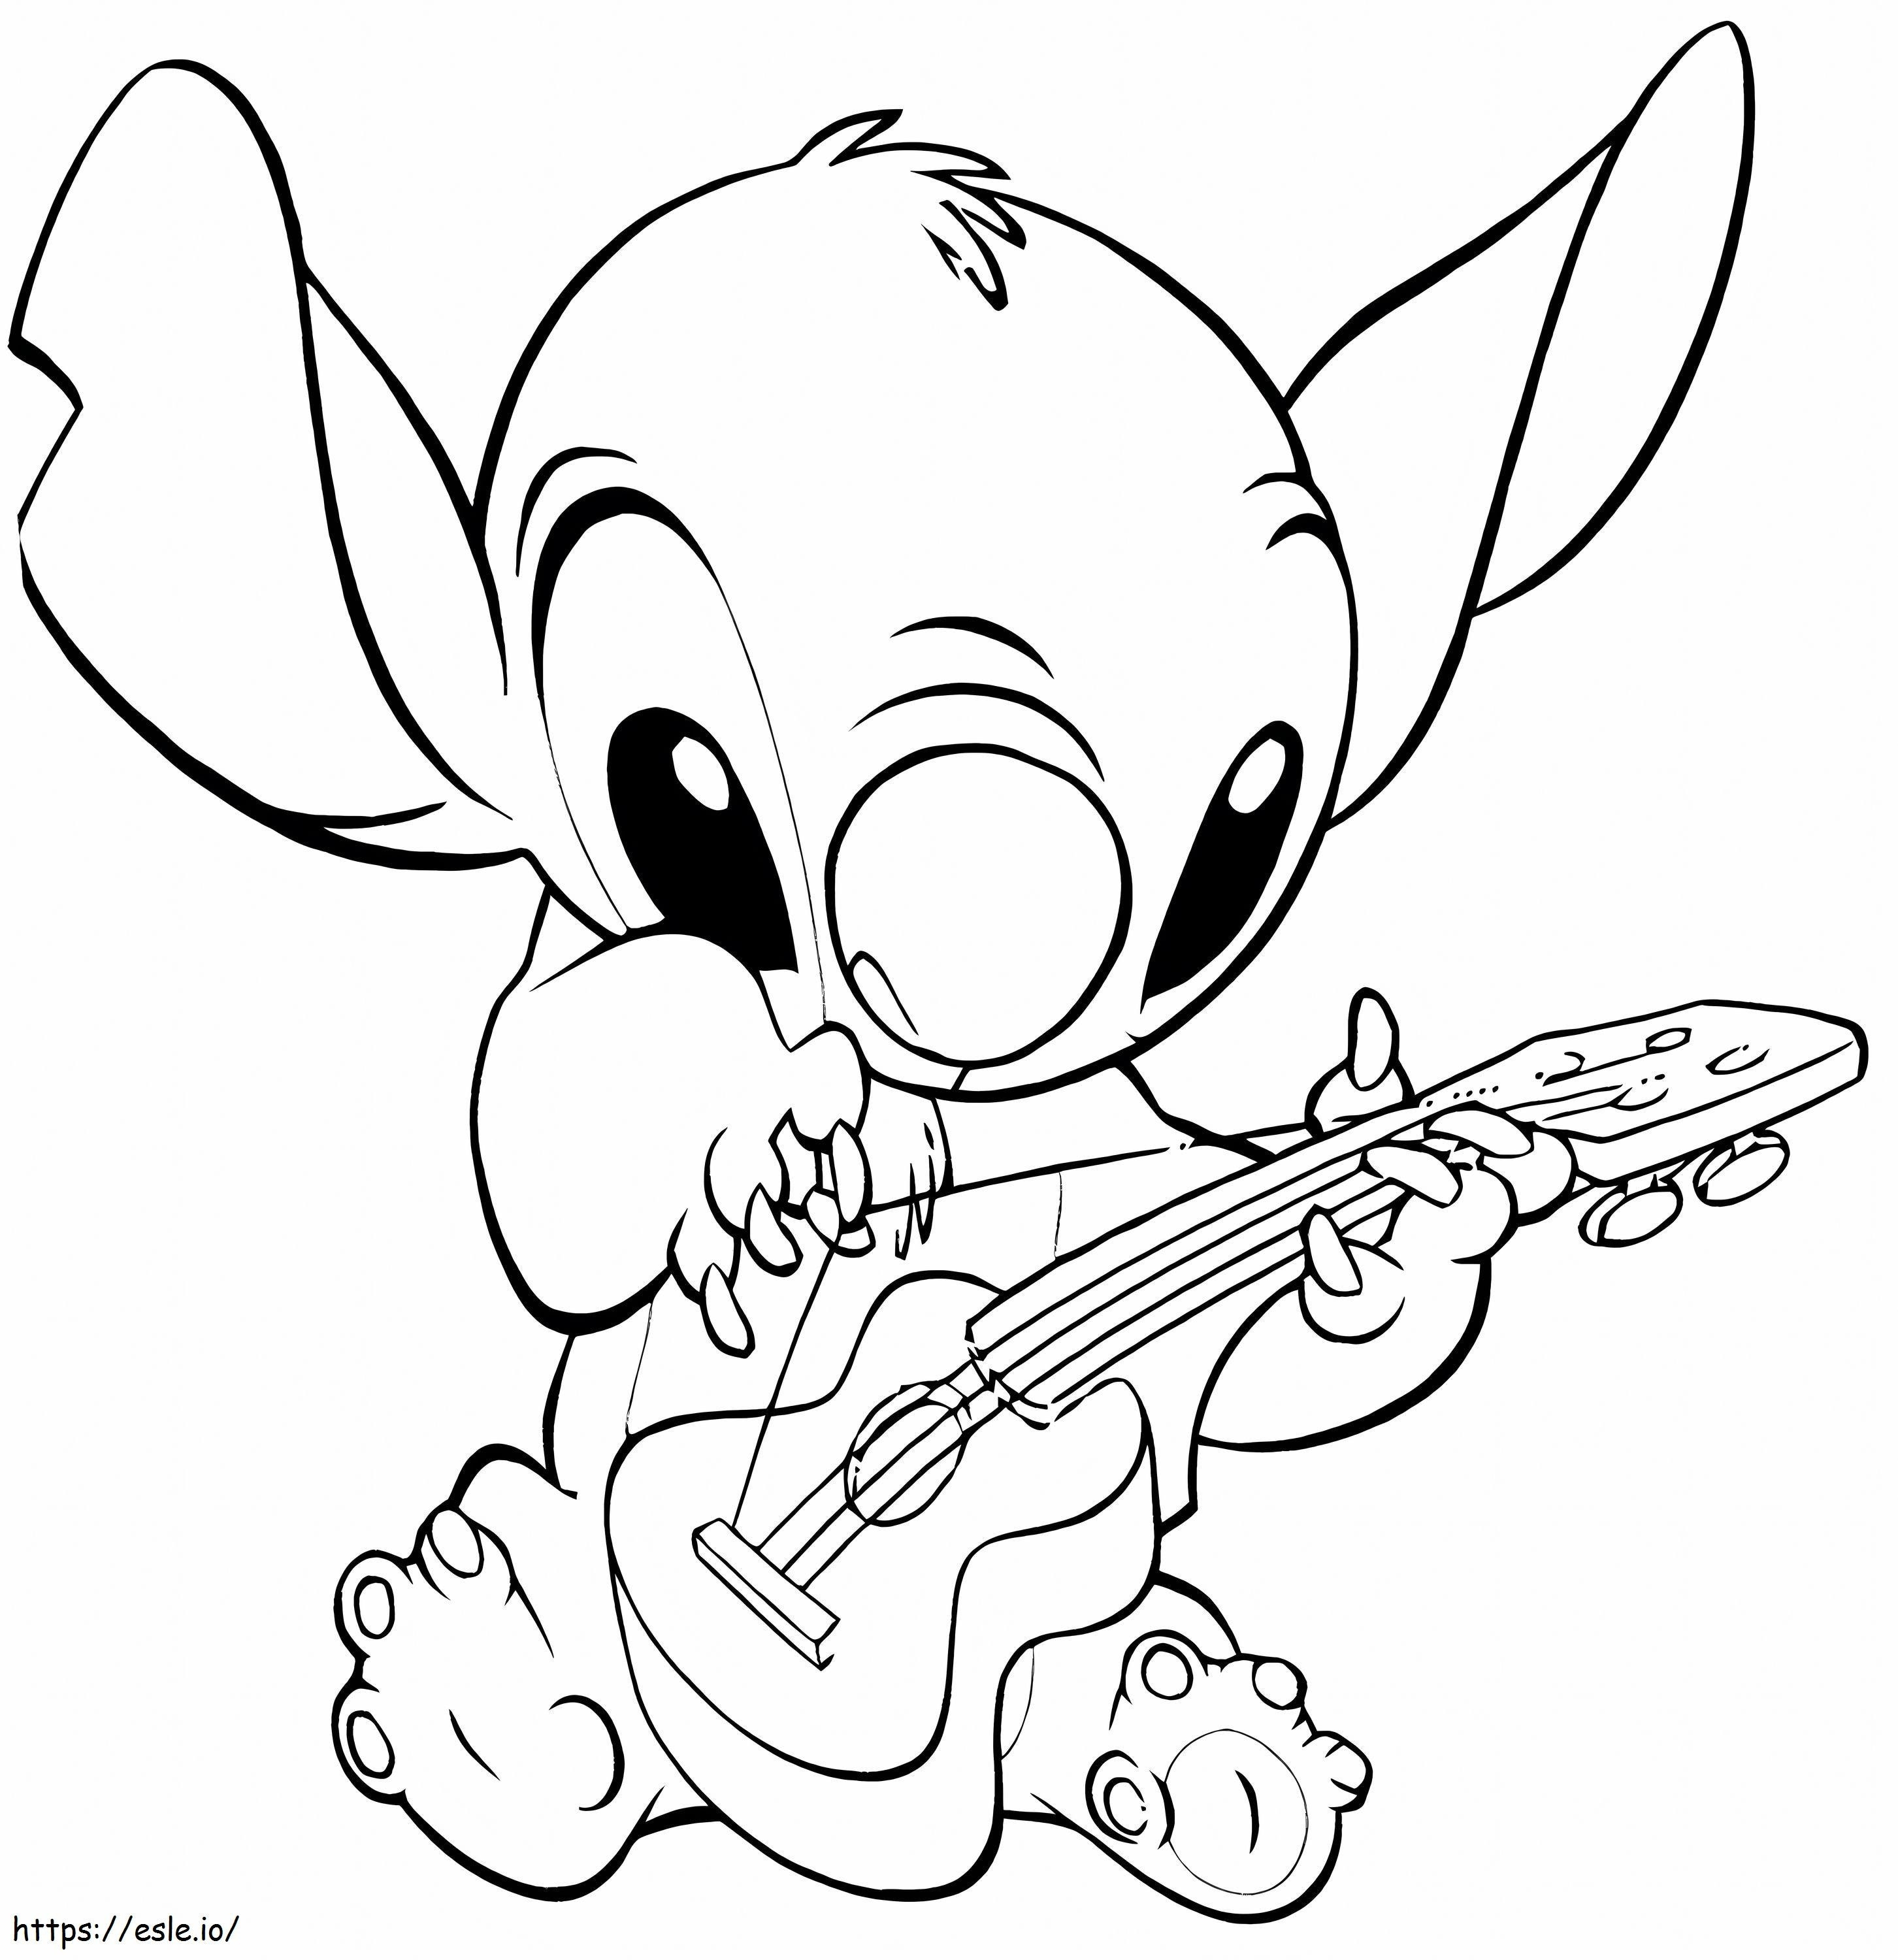 Disney Stitch gra na gitarze kolorowanka